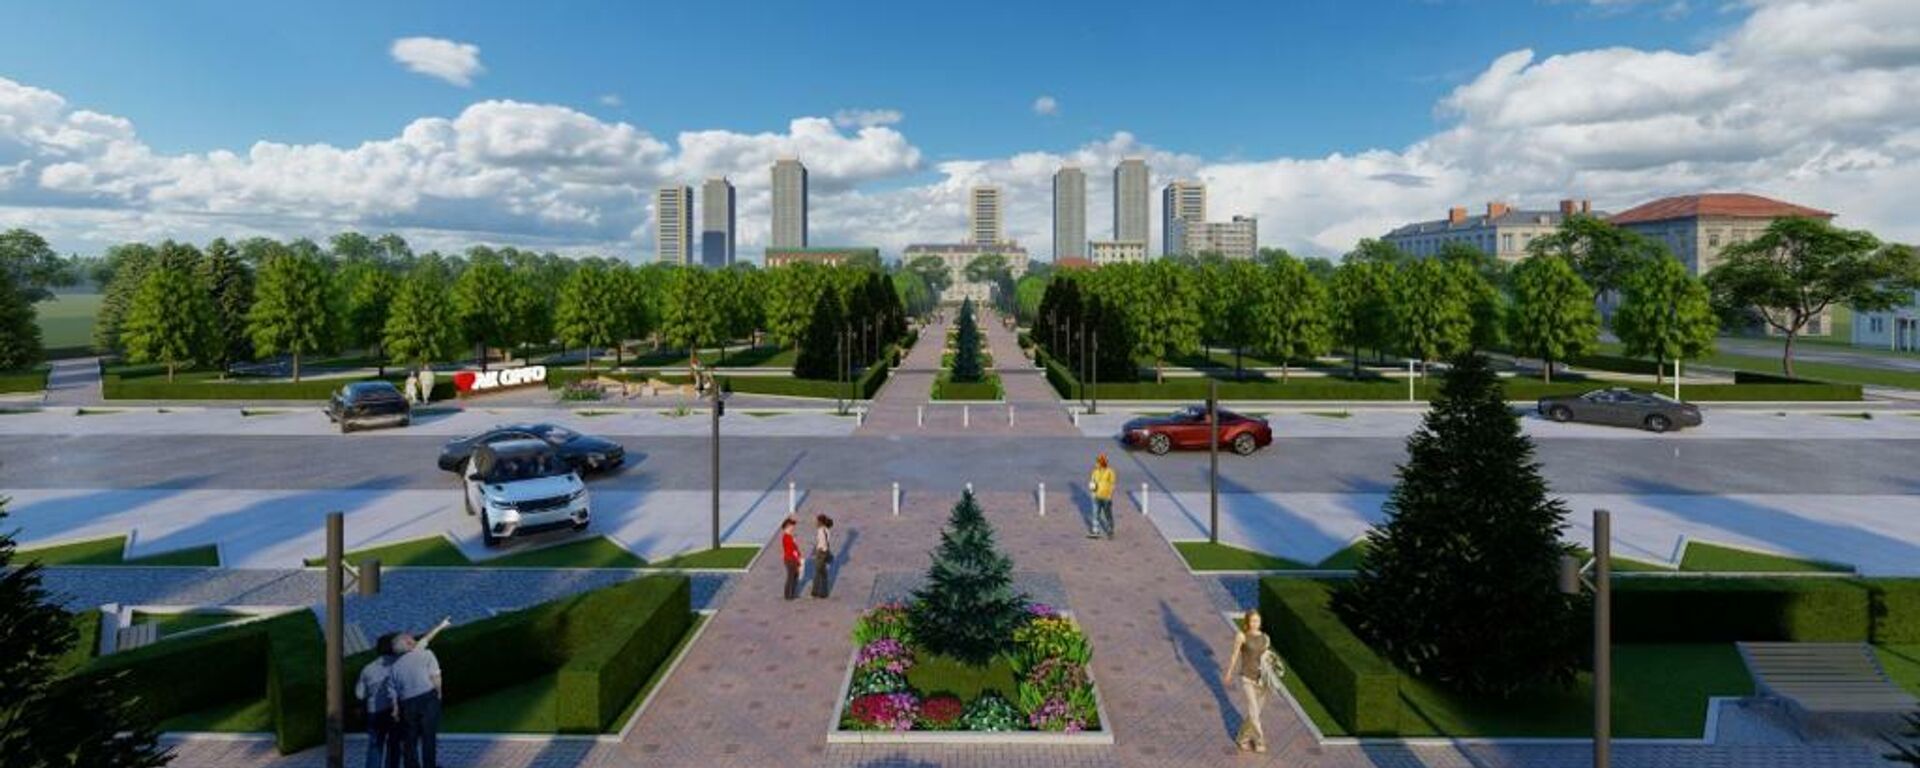 Эскиз нового сквера в жилмассиве Ак-Орго в городе Бишкек - Sputnik Кыргызстан, 1920, 28.06.2022